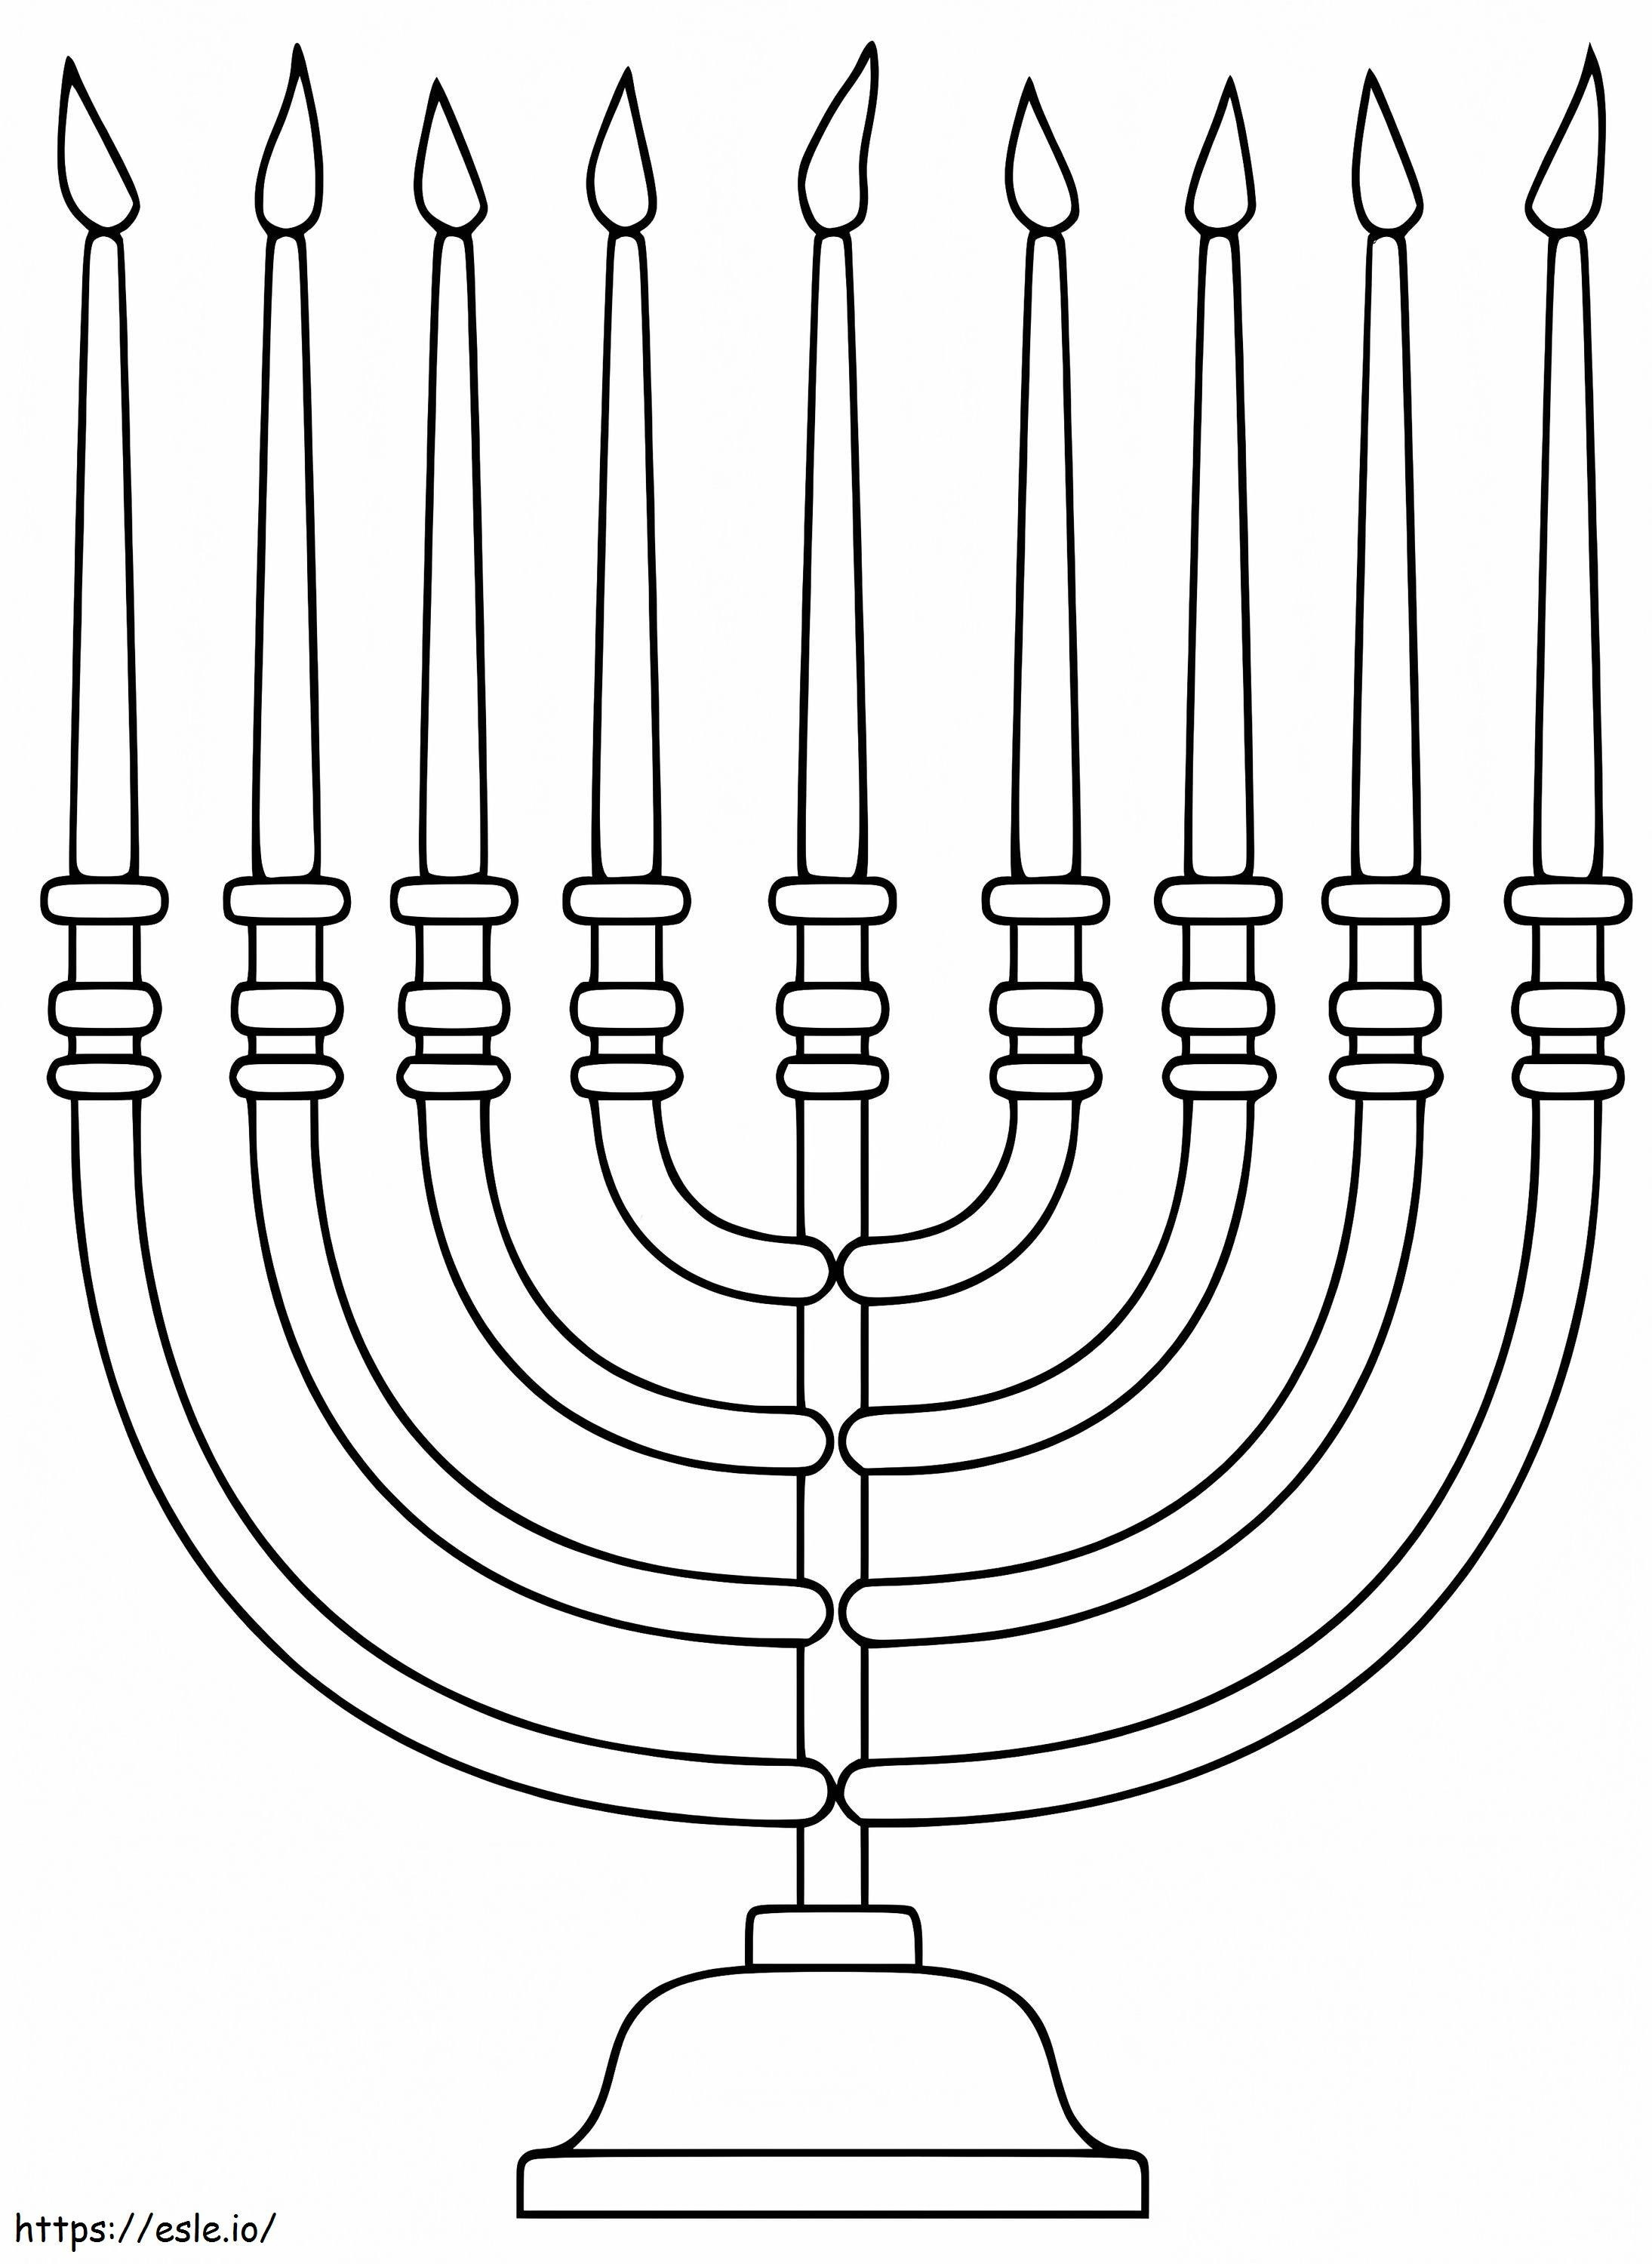 Free Hanukkah Menorah coloring page